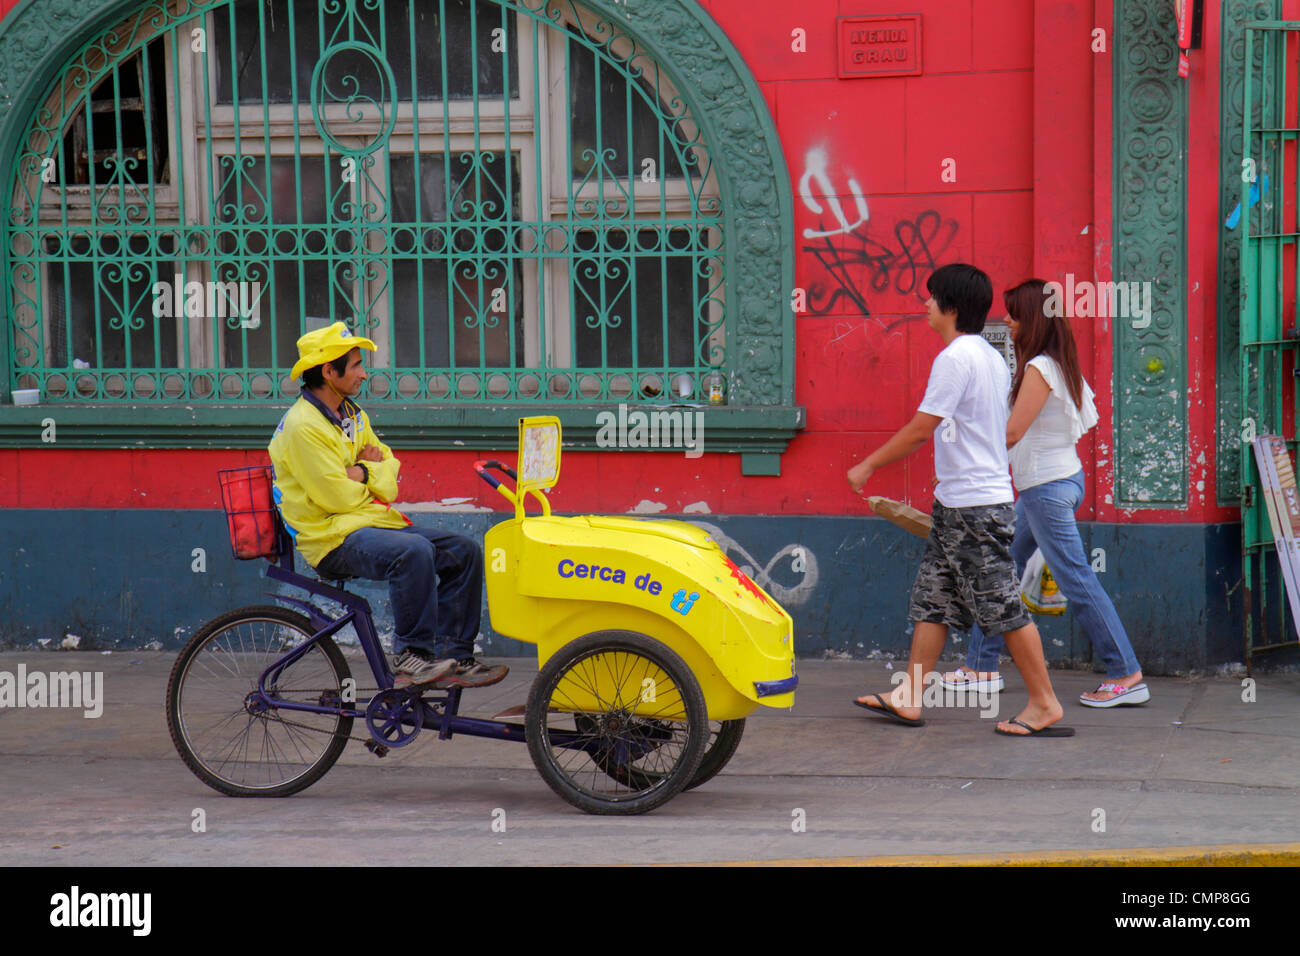 Lima Perú,Distrito Barranco,Avenida Miguel Grau,escena urbana,calle,acera,hombre étnico hispano hombres,mujer mujeres,pareja,caminar,hielo Foto de stock